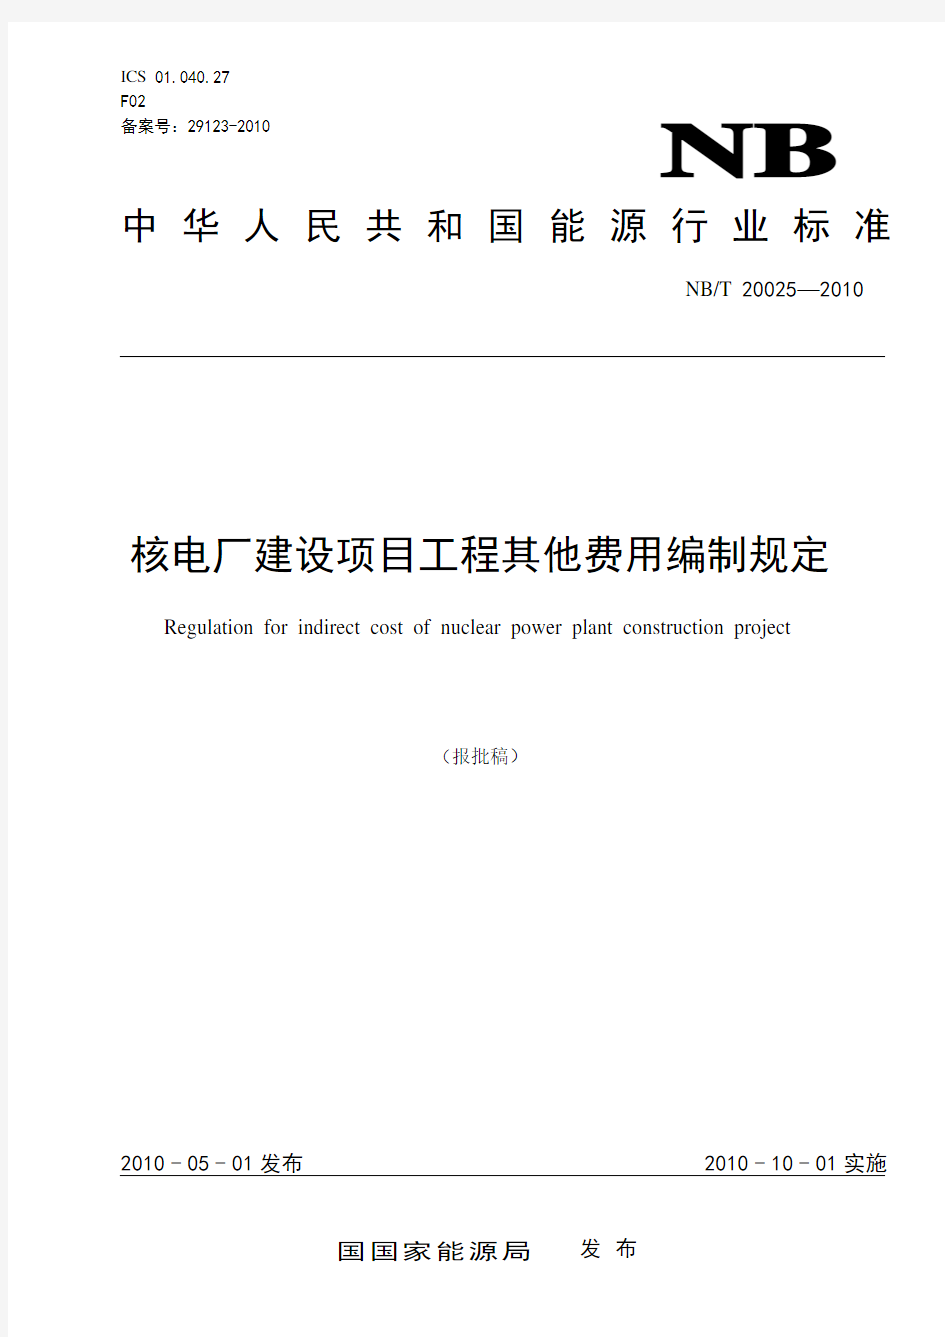 核电厂建设项目工程其他费用编制规定(2011-06-24-Liwa)